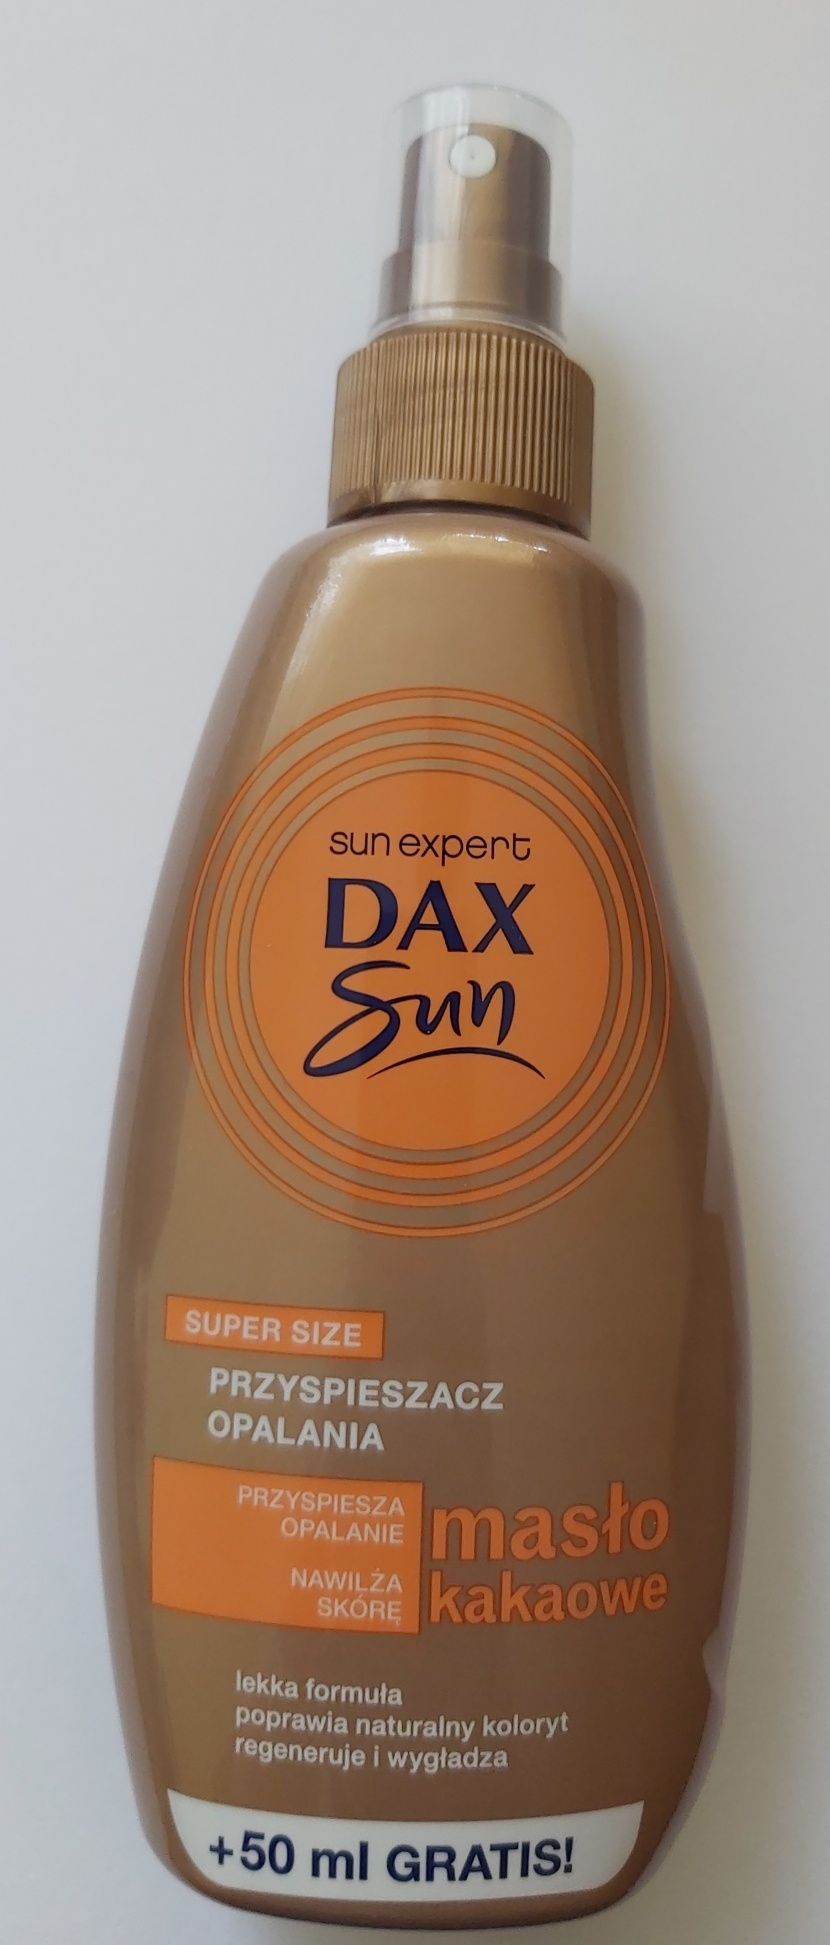 DAX SUN przyspieszacz opalania z masłem kakaowym 200 ml